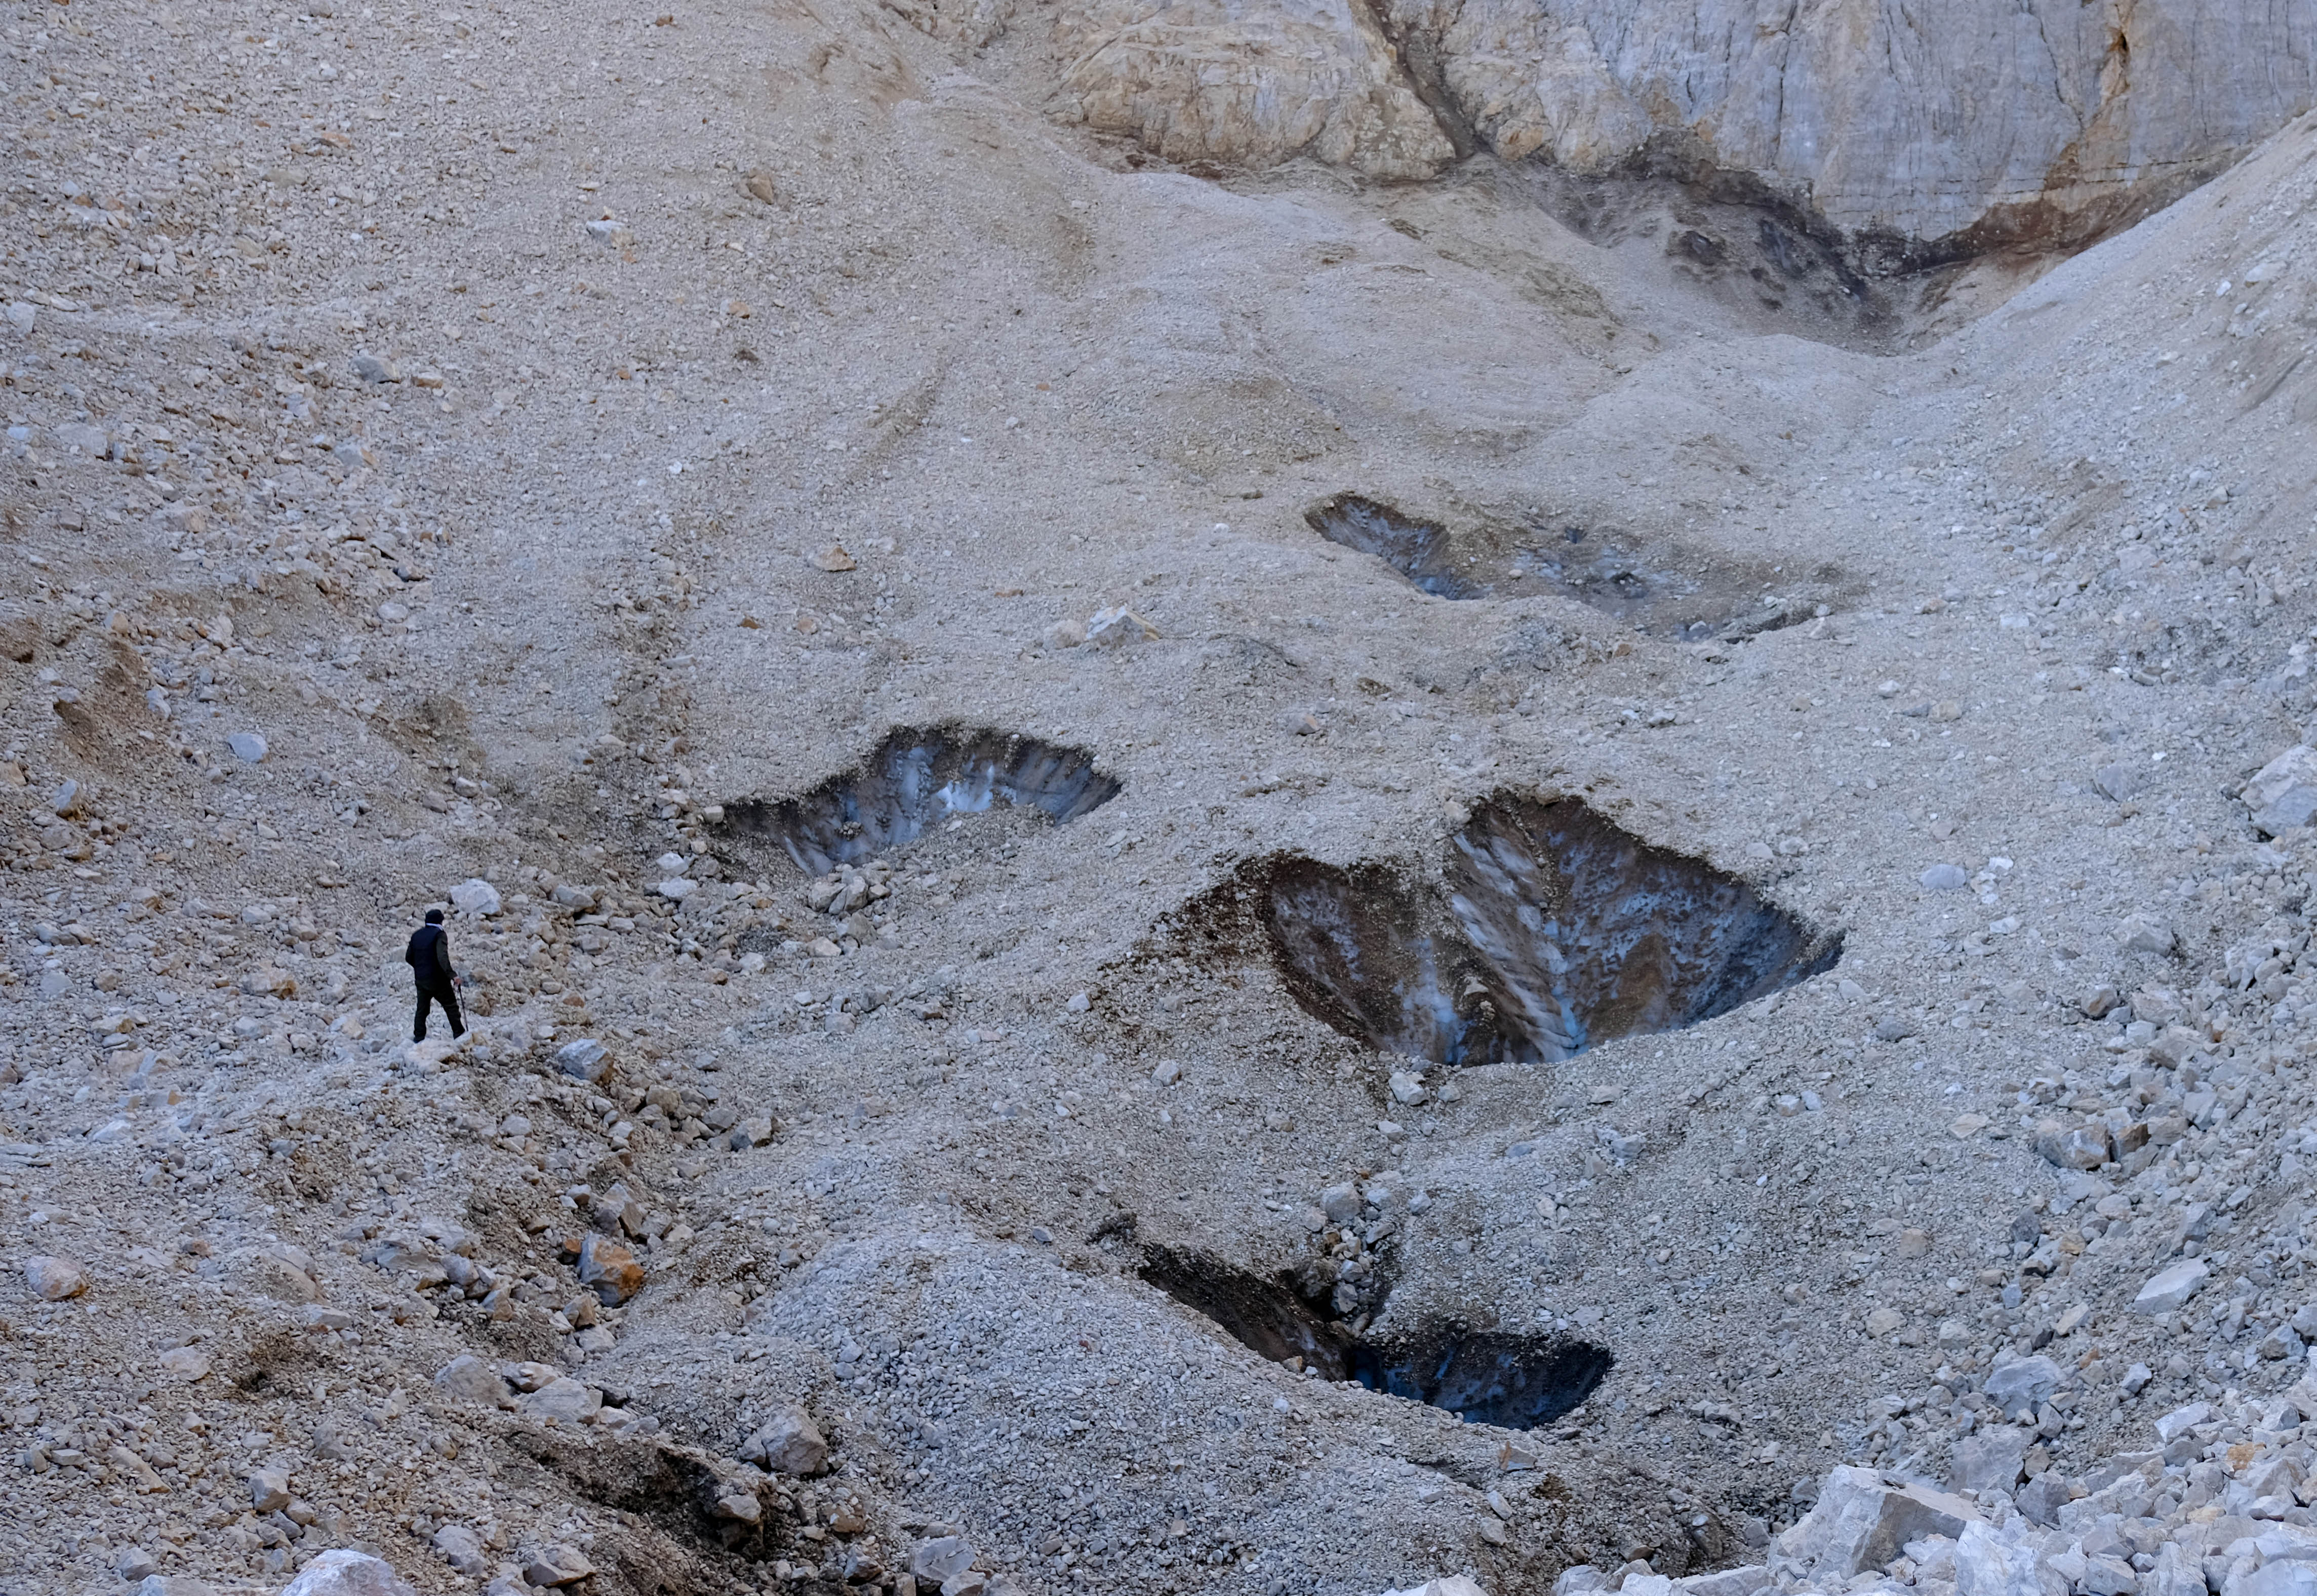 konyada-25-milyon-yil-oncesine-ait-sirk-buzulu-bulundu-6003-dhaphoto2.jpg